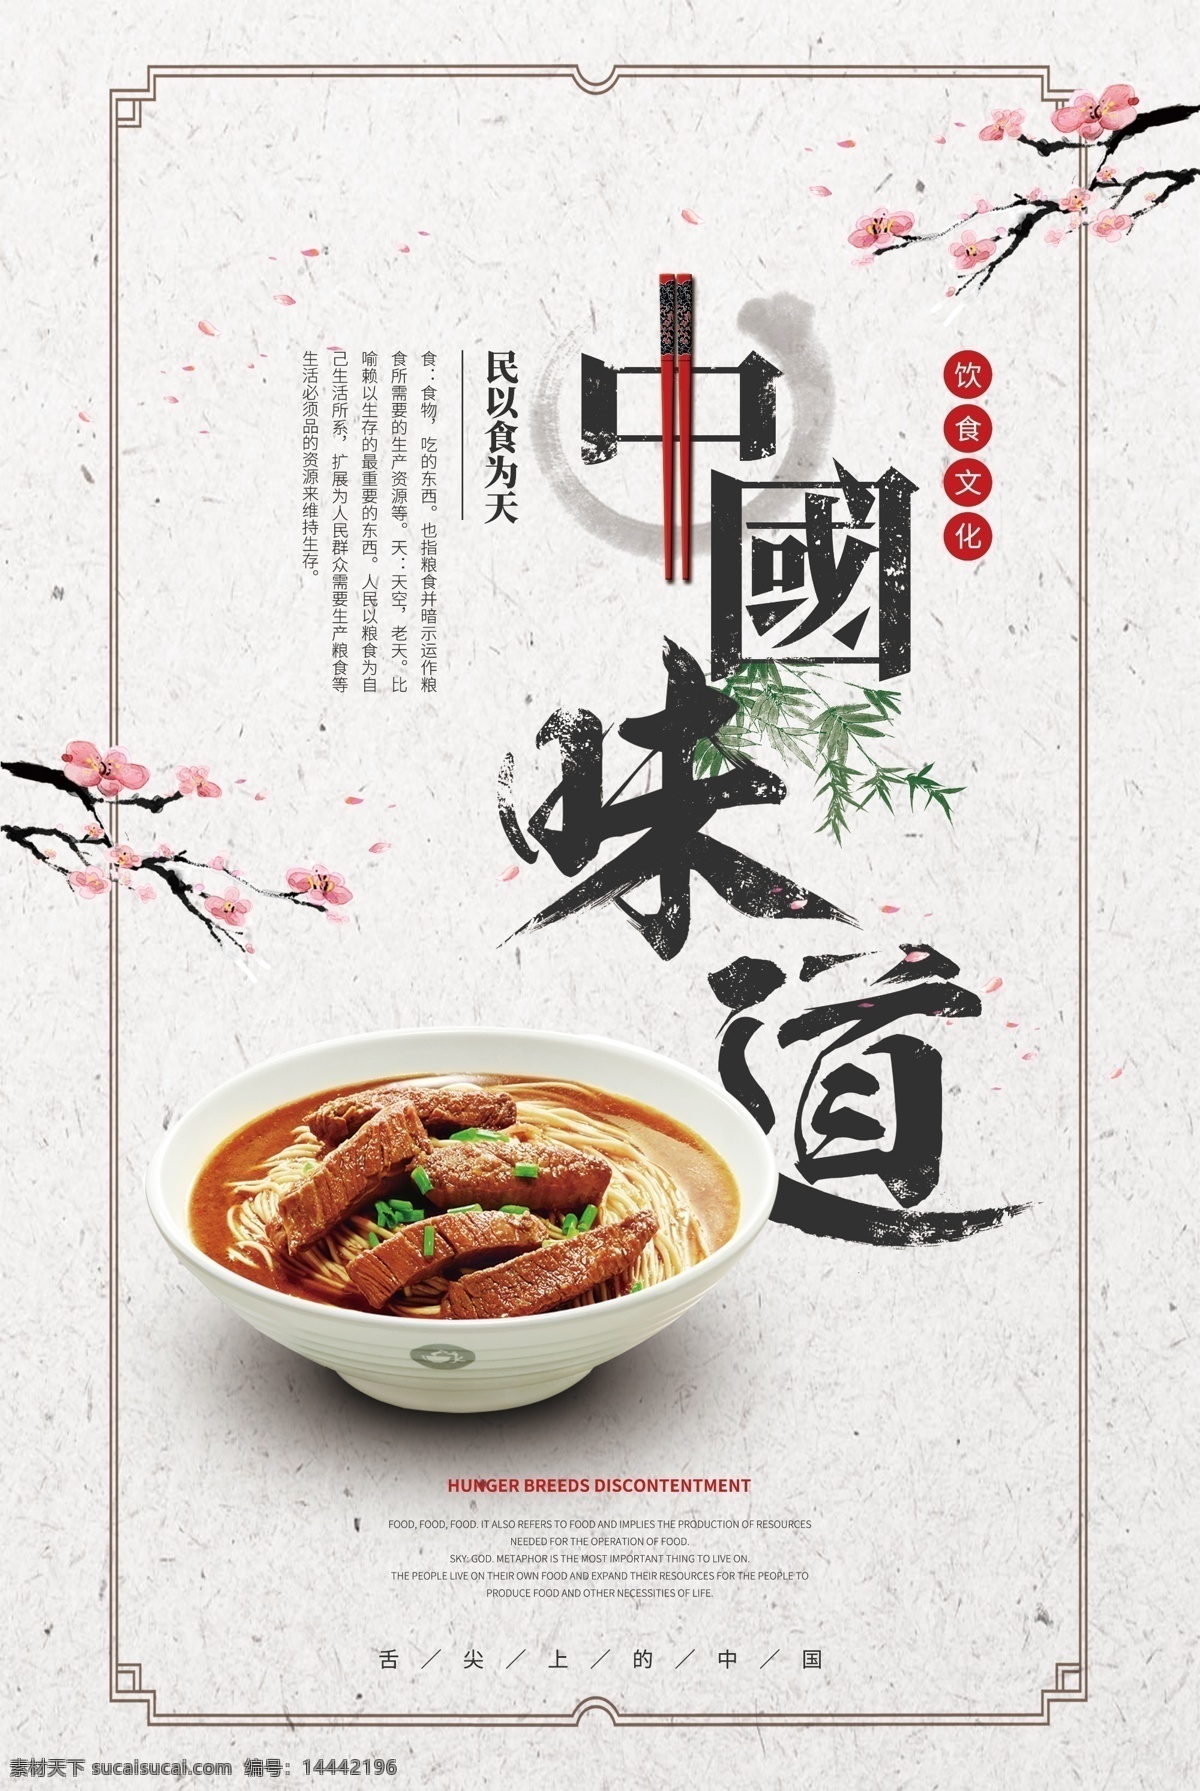 中国 味道 美食 促销活动 海报 中国味道 促销 活动 餐饮美食 类